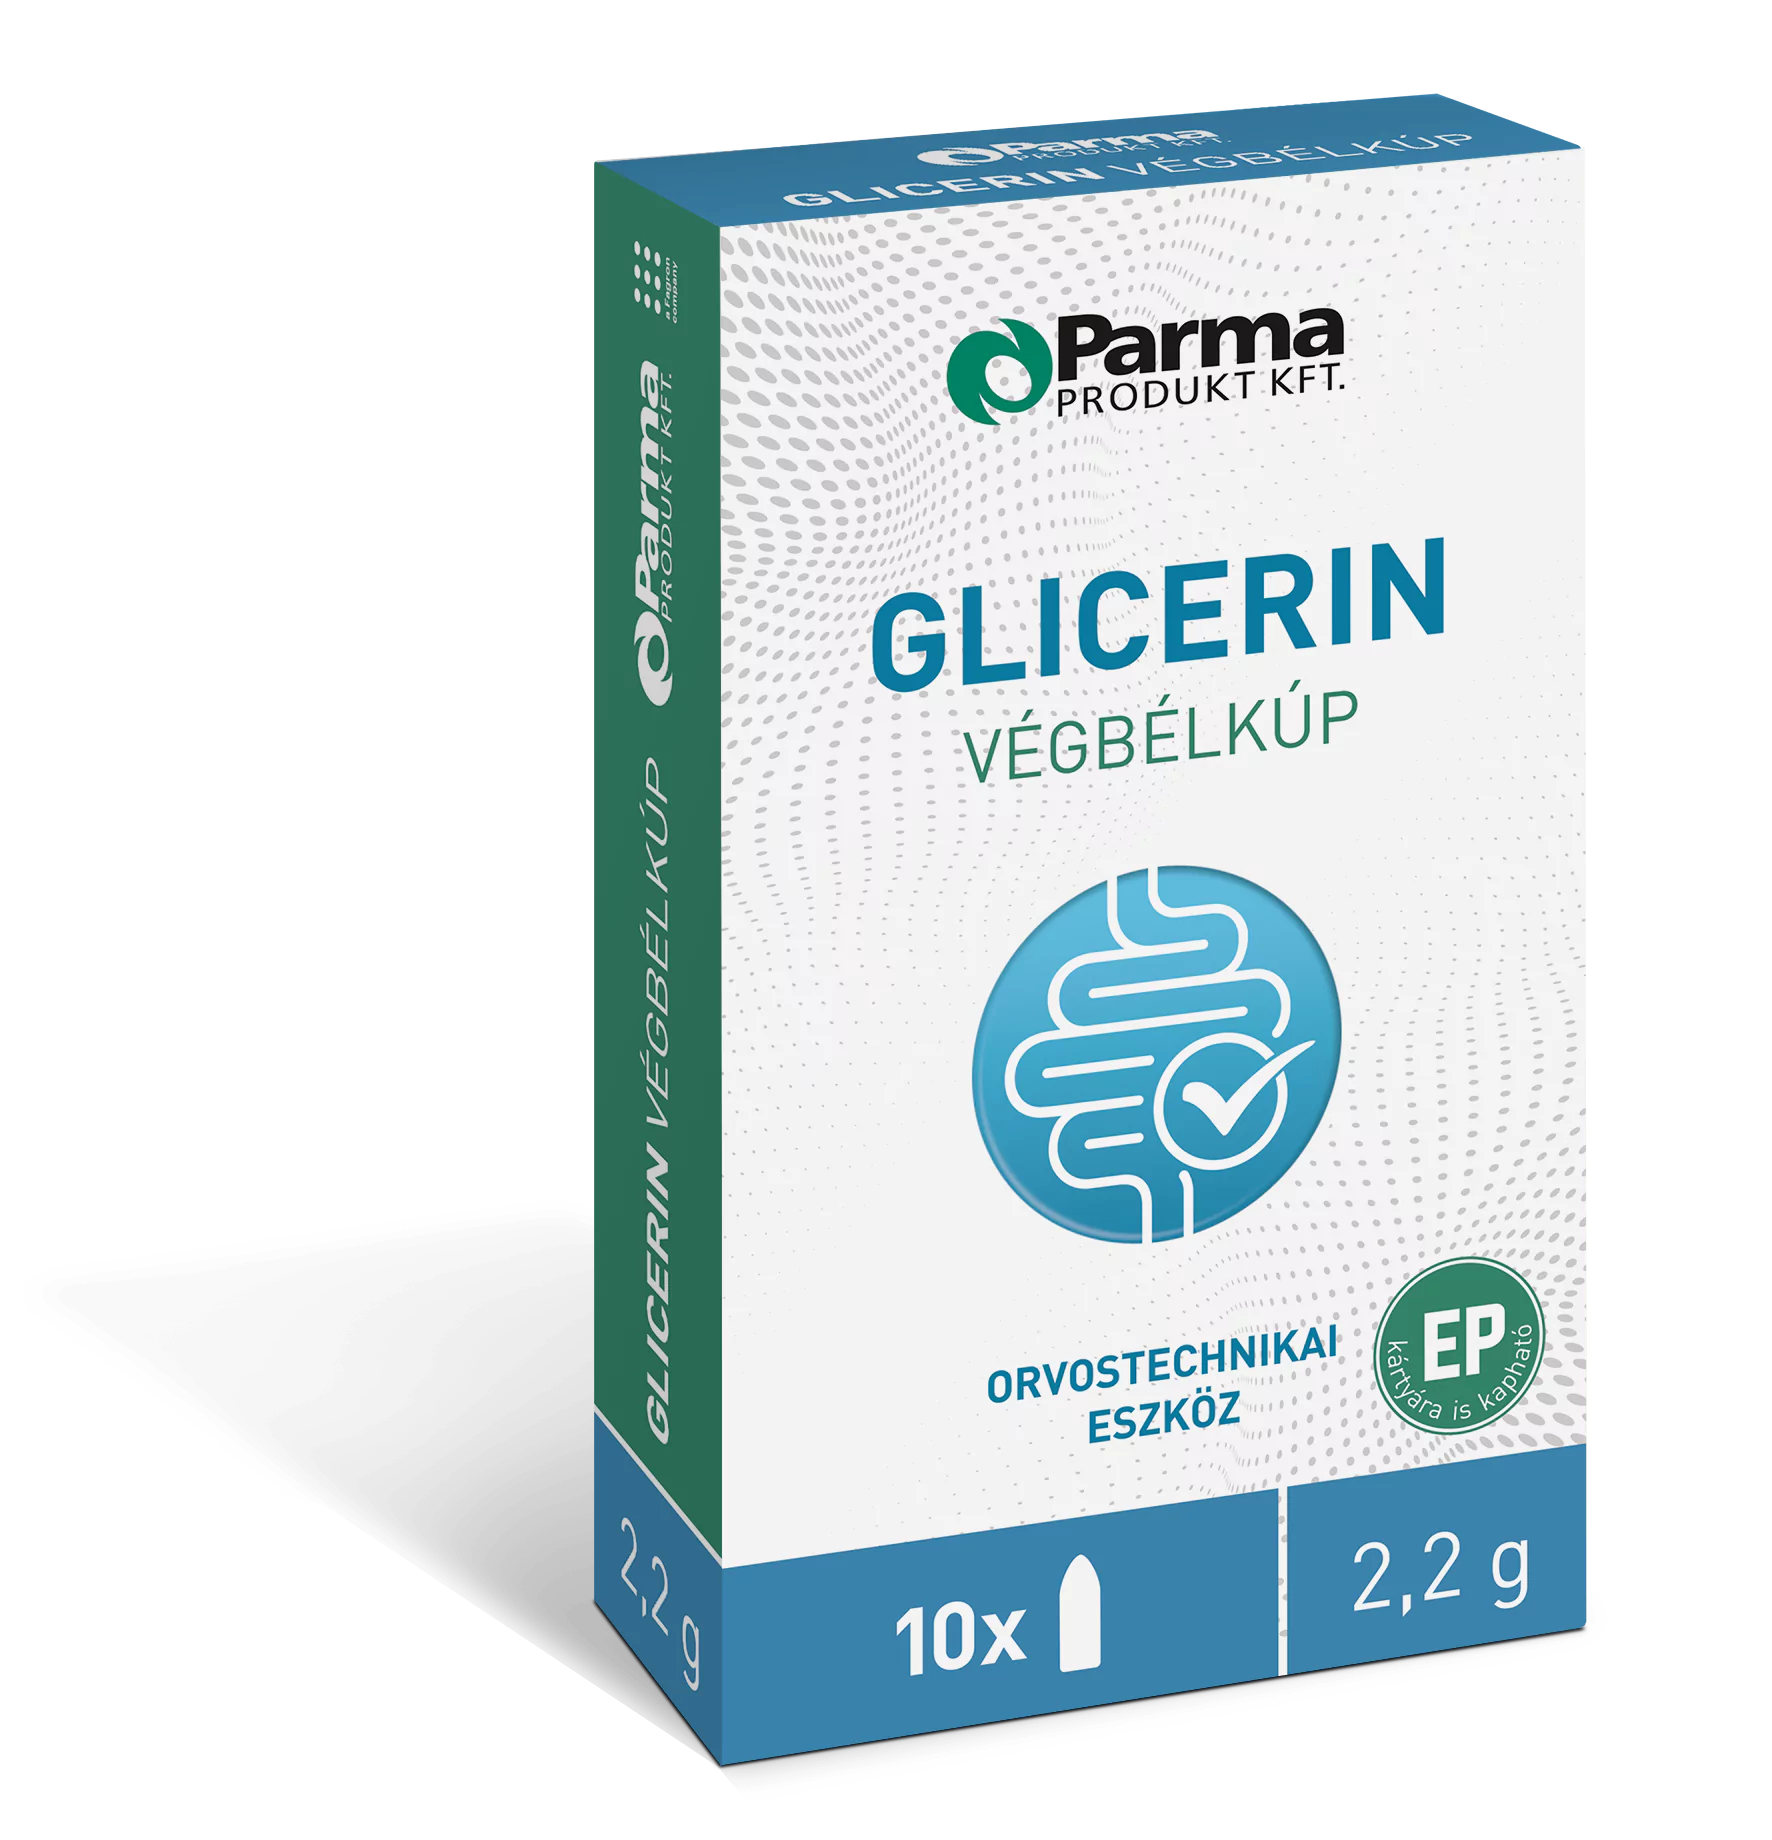 Glicerin végbélkúb